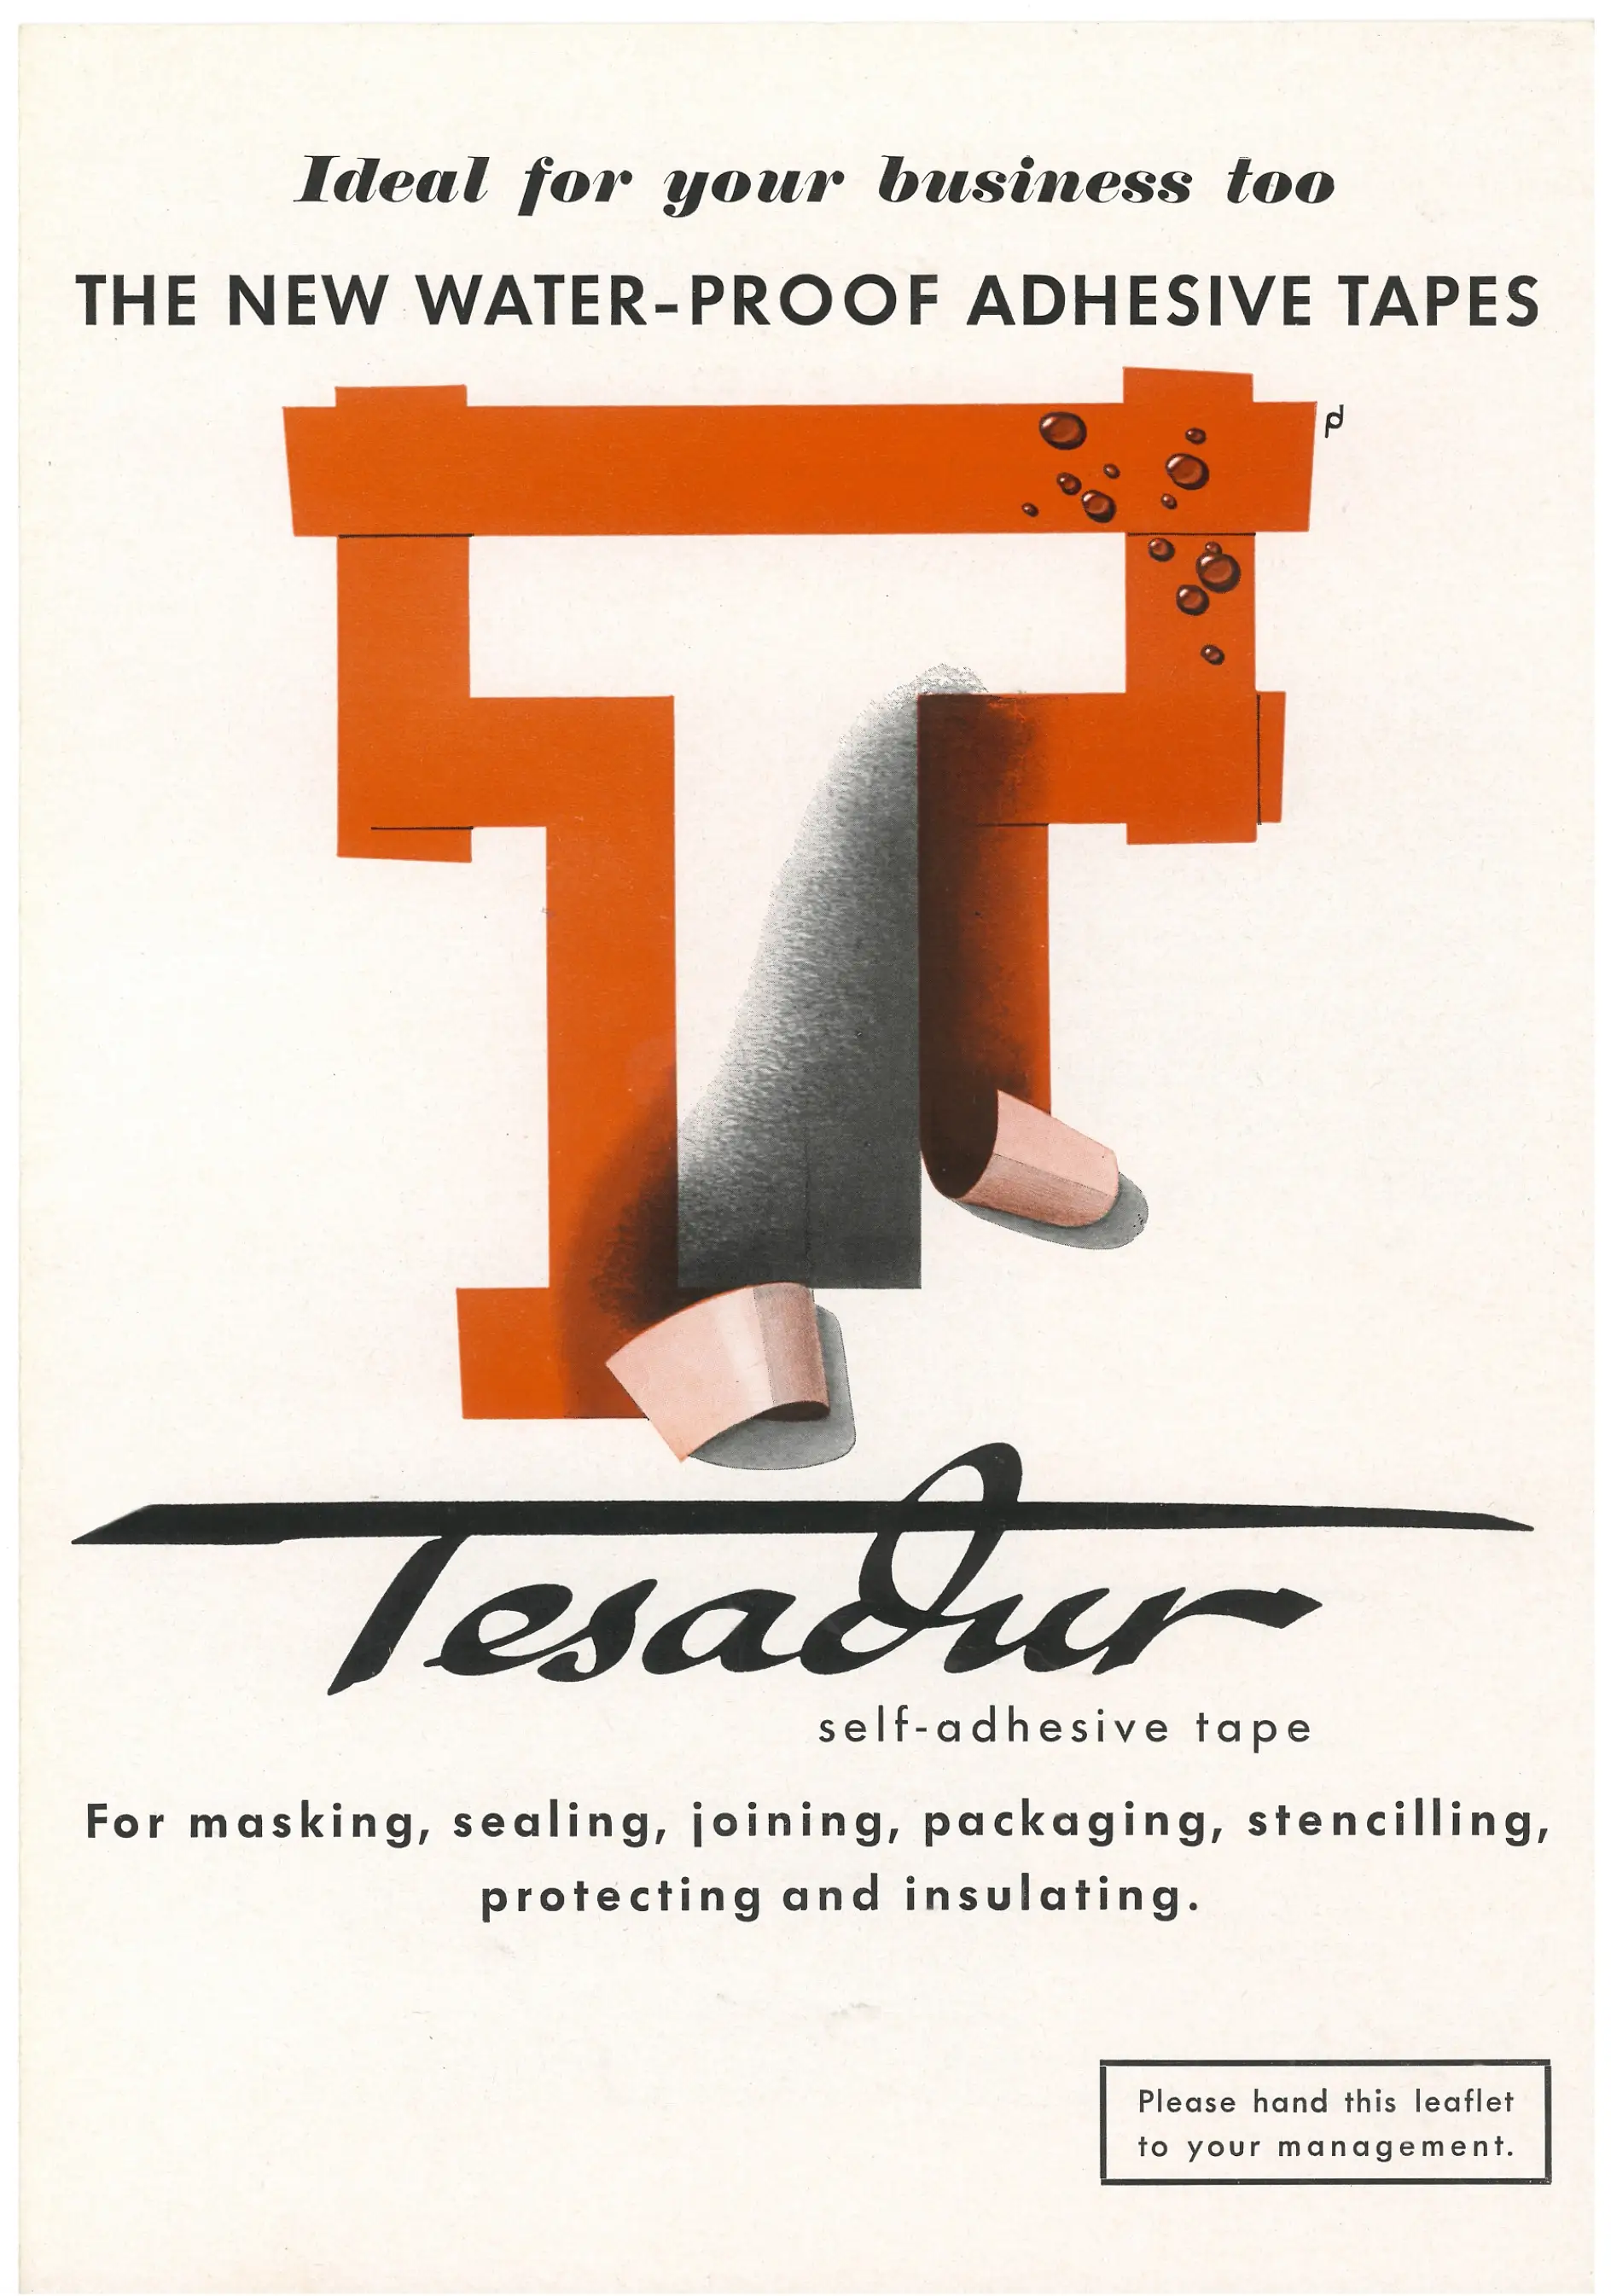 Η tesa διαφήμιζε το 1953 στις ΗΠΑ την αδιάβροχη ταινία Tesadur.